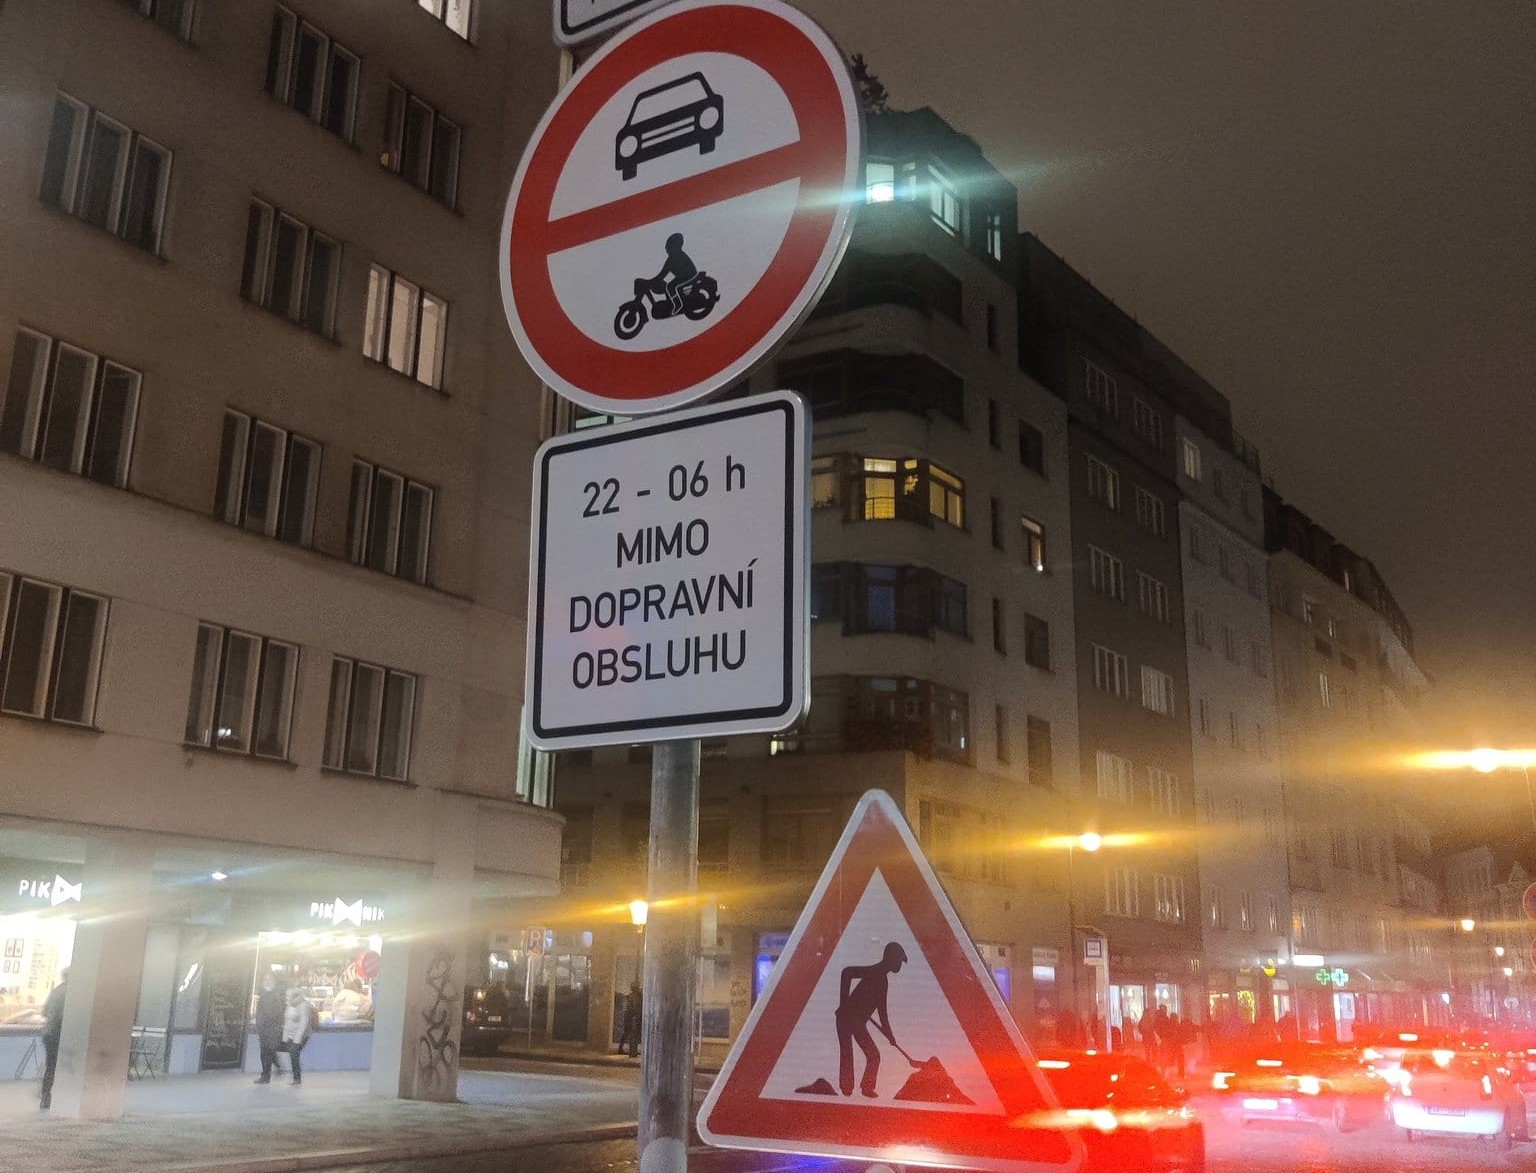 Značky zakazujících vjezd do velké části pražského Starého Města. Foto: Rezidenti1